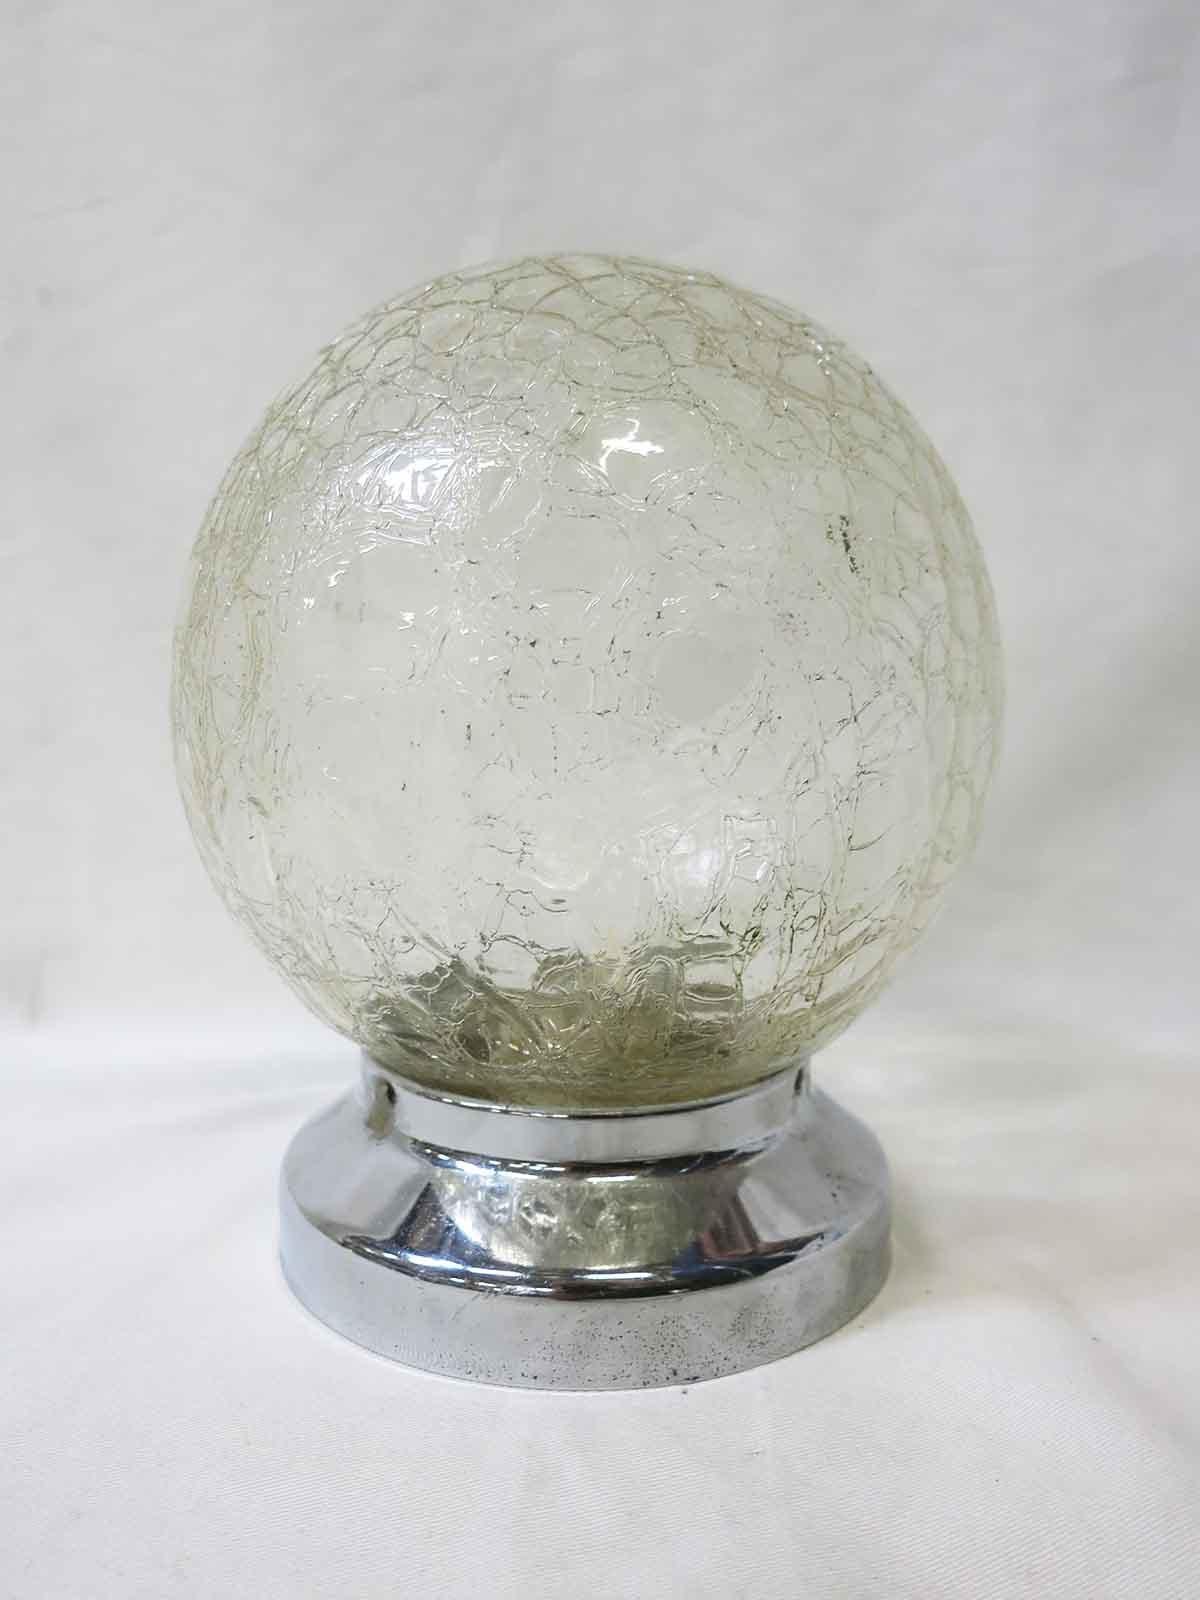 Ce globe en verre vintage unique a une surface texturée en verre craquelé, parfaite pour ajouter un charme moderne à toute maison. Disponible avec un nouveau raccord de 3